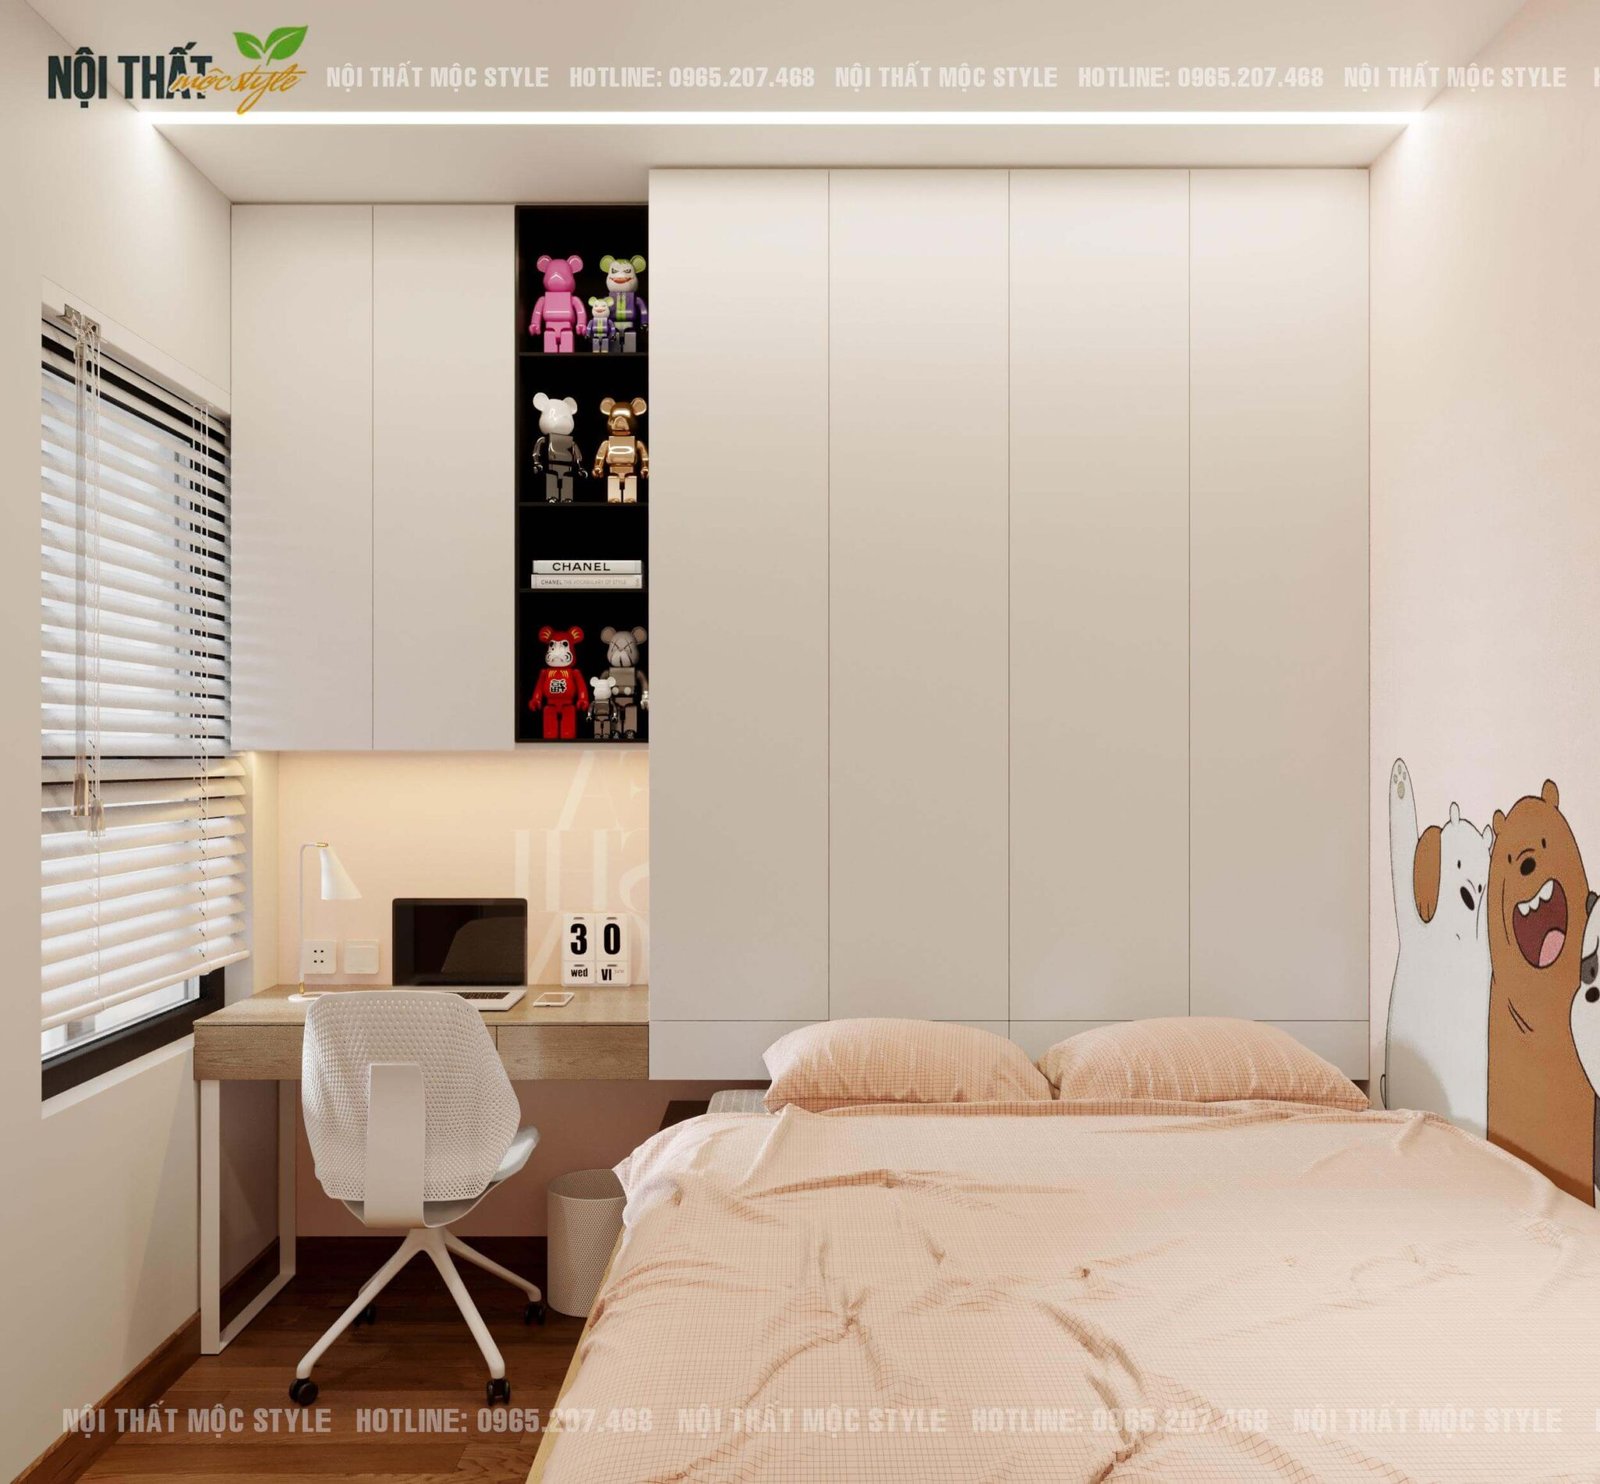 Thiết kế giường liền tủ tạo không gian sử dụng thuận tiện và phù hợp với diện tích nhỏ